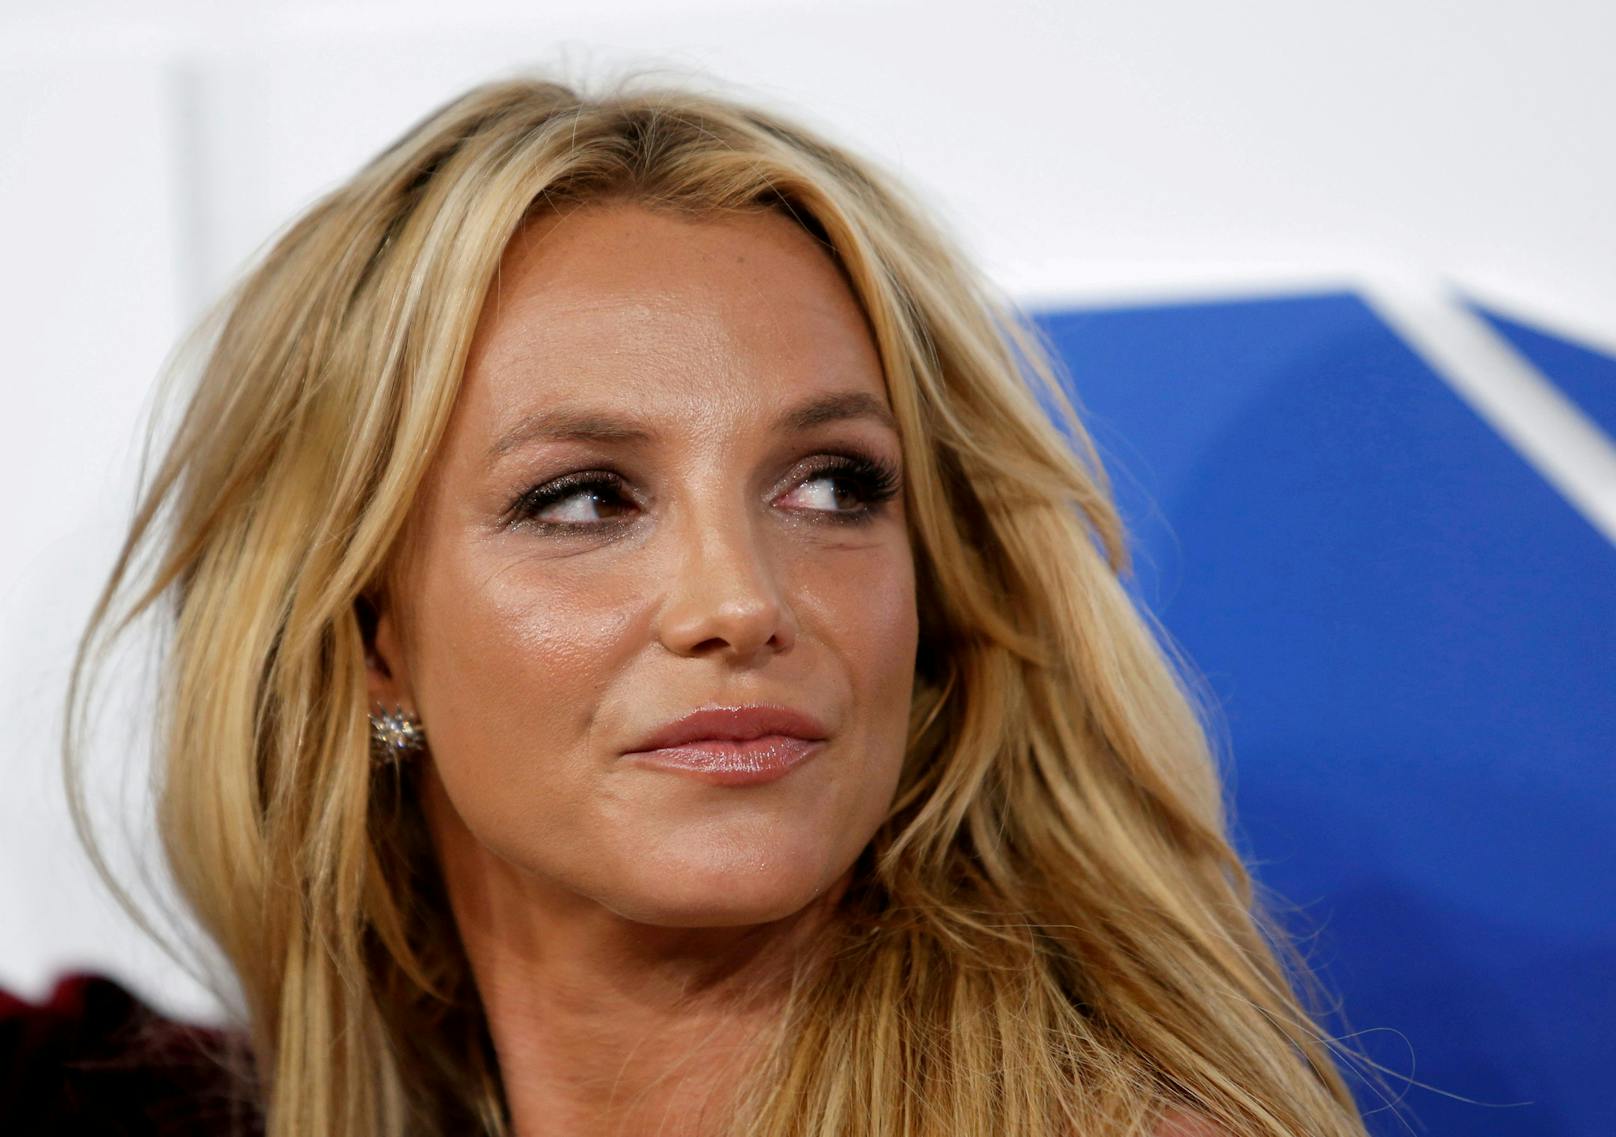 TV-Knaller! Leben von Britney soll zur Serie werden